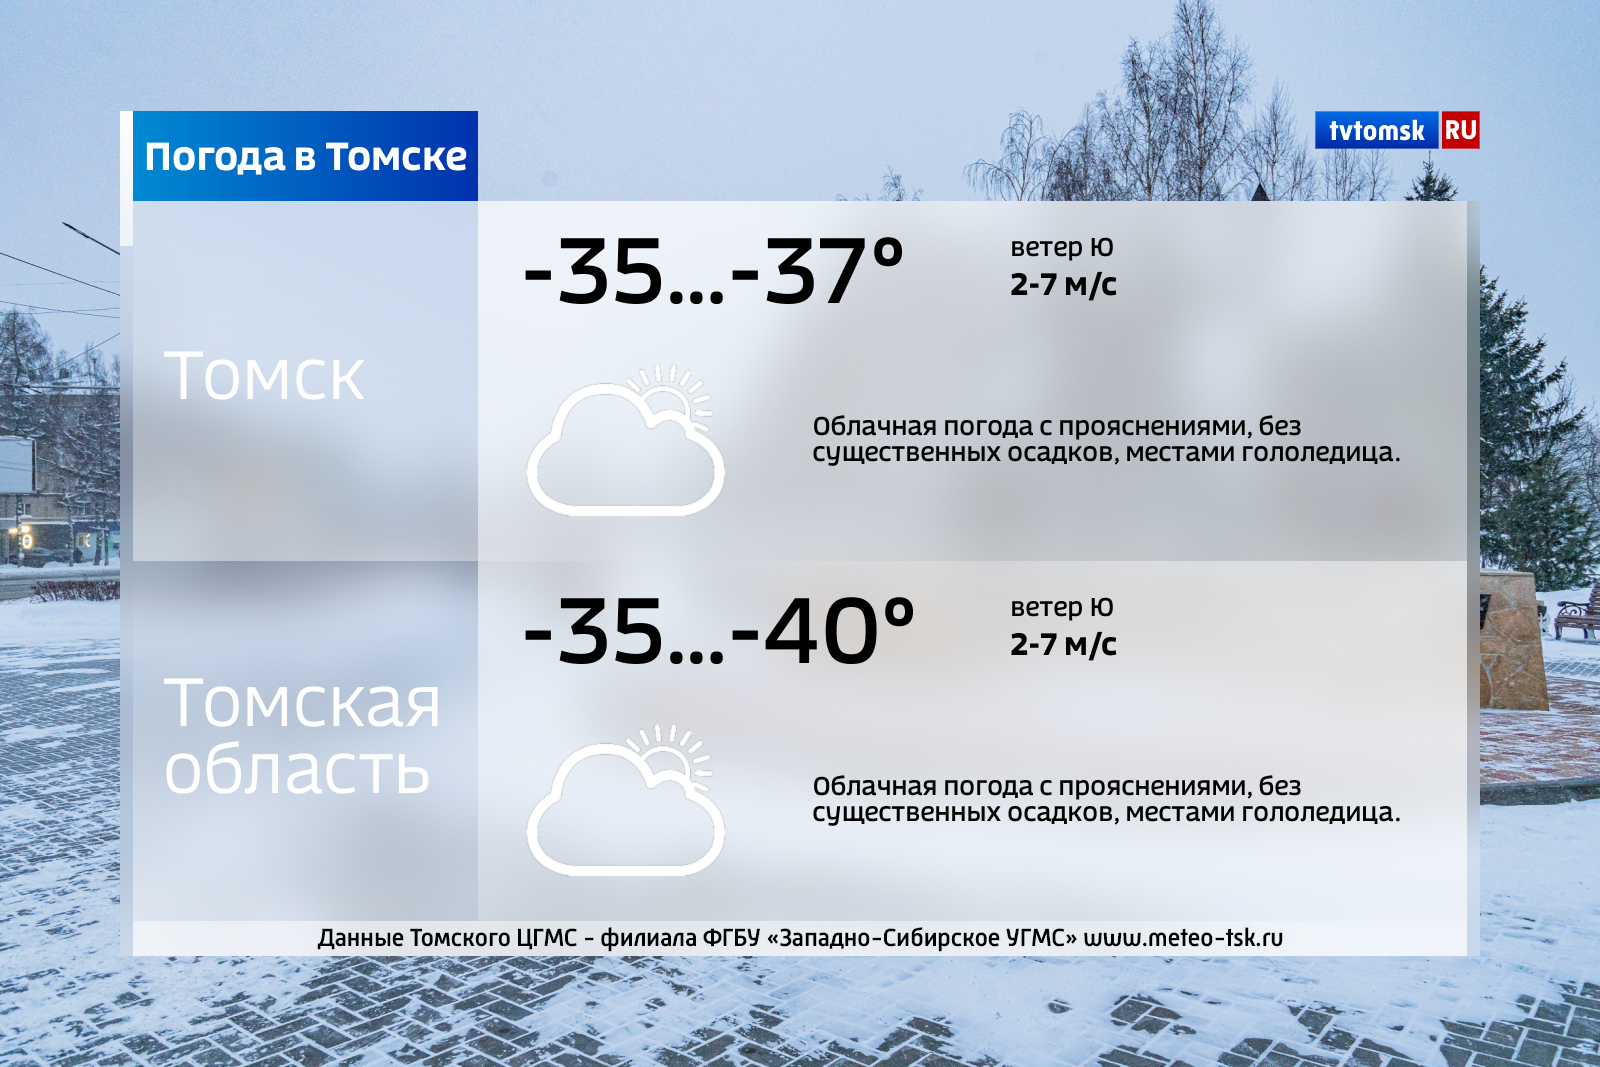 Погода в томском. Погода в Томске. Погода в Томске сегодня. Какая погода в Томске. Какая сейчас погода в Томске.